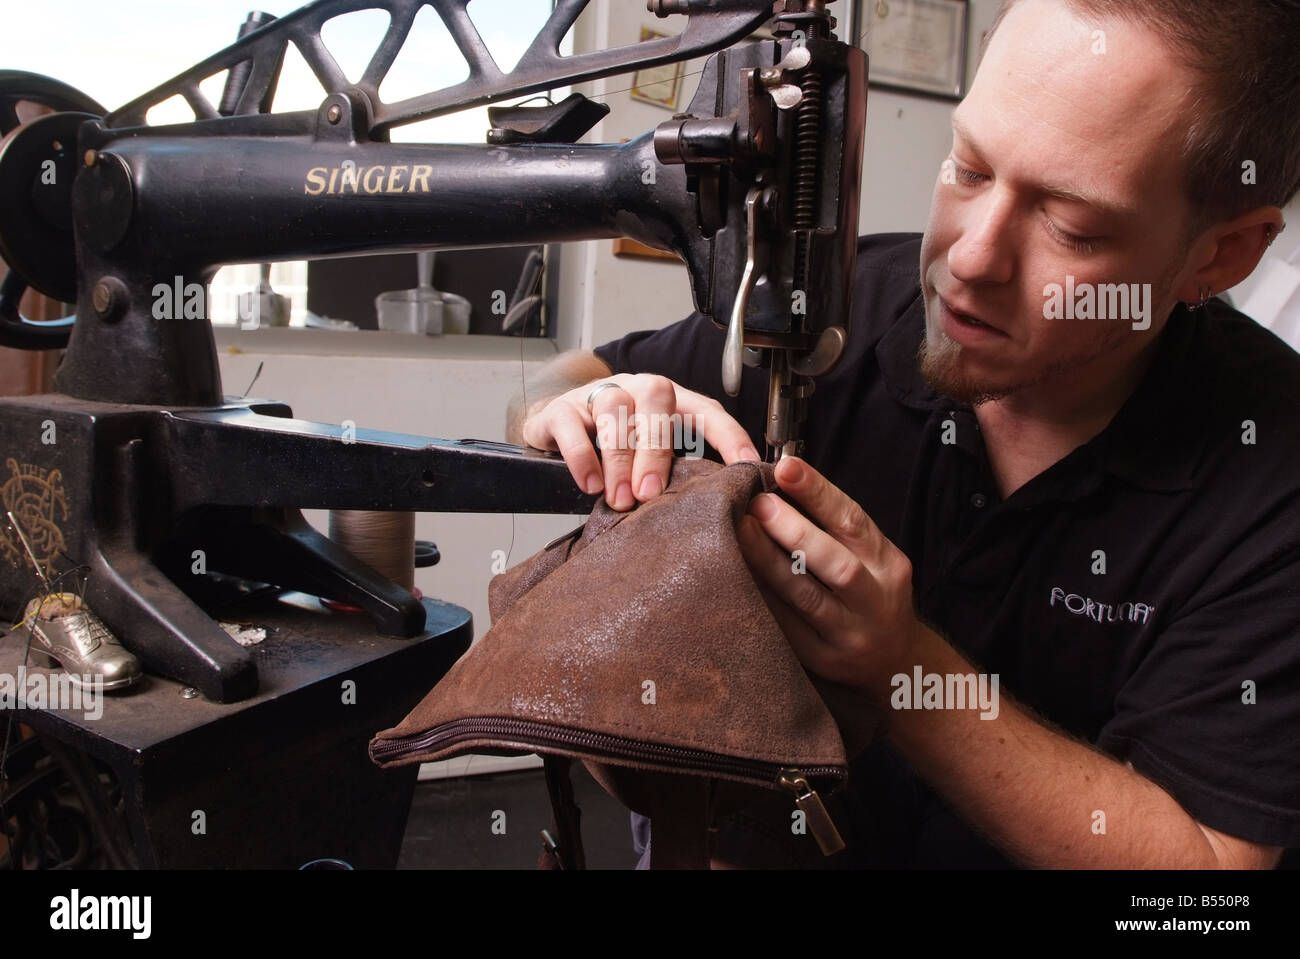 Un hombre utiliza una antigua máquina de coser Singer para la reparación de artículos de cuero en una pequeña tienda en Maryland, EE.UU. Foto de stock